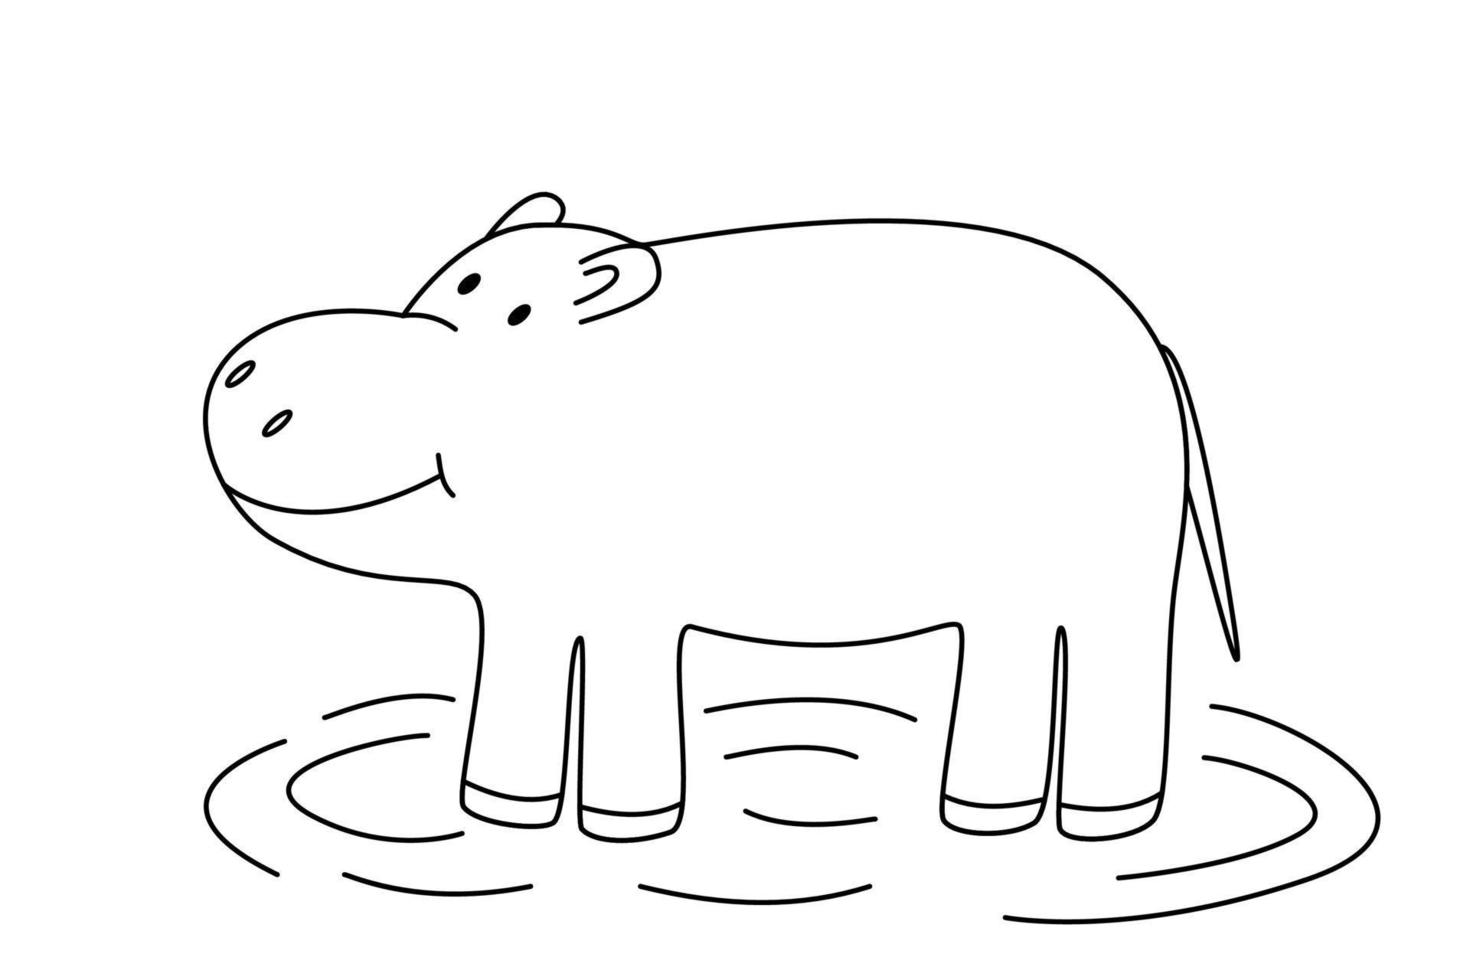 niedliches Cartoon-Nilpferd, Malbuch für Kinder, Vektorgrafik eines afrikanischen Tieres isoliert auf Weiß. vektor